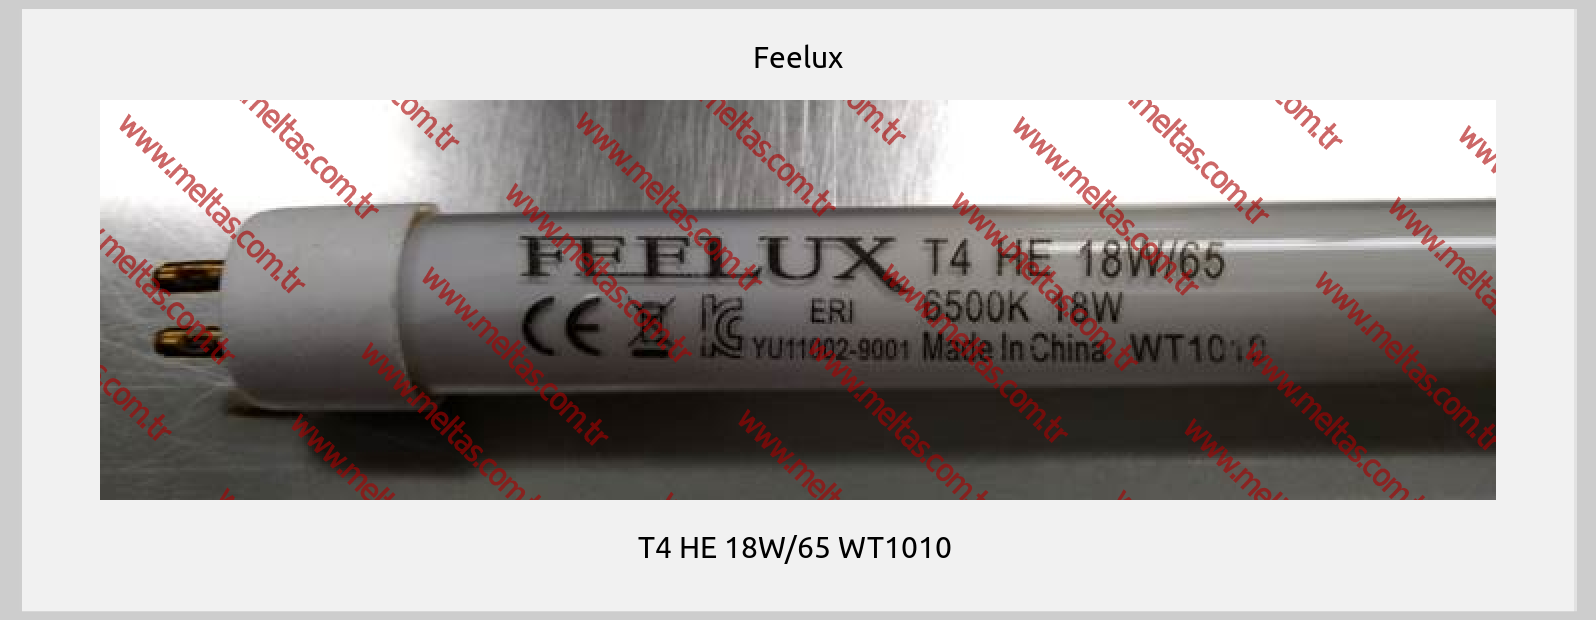 Feelux-T4 HE 18W/65 WT1010 